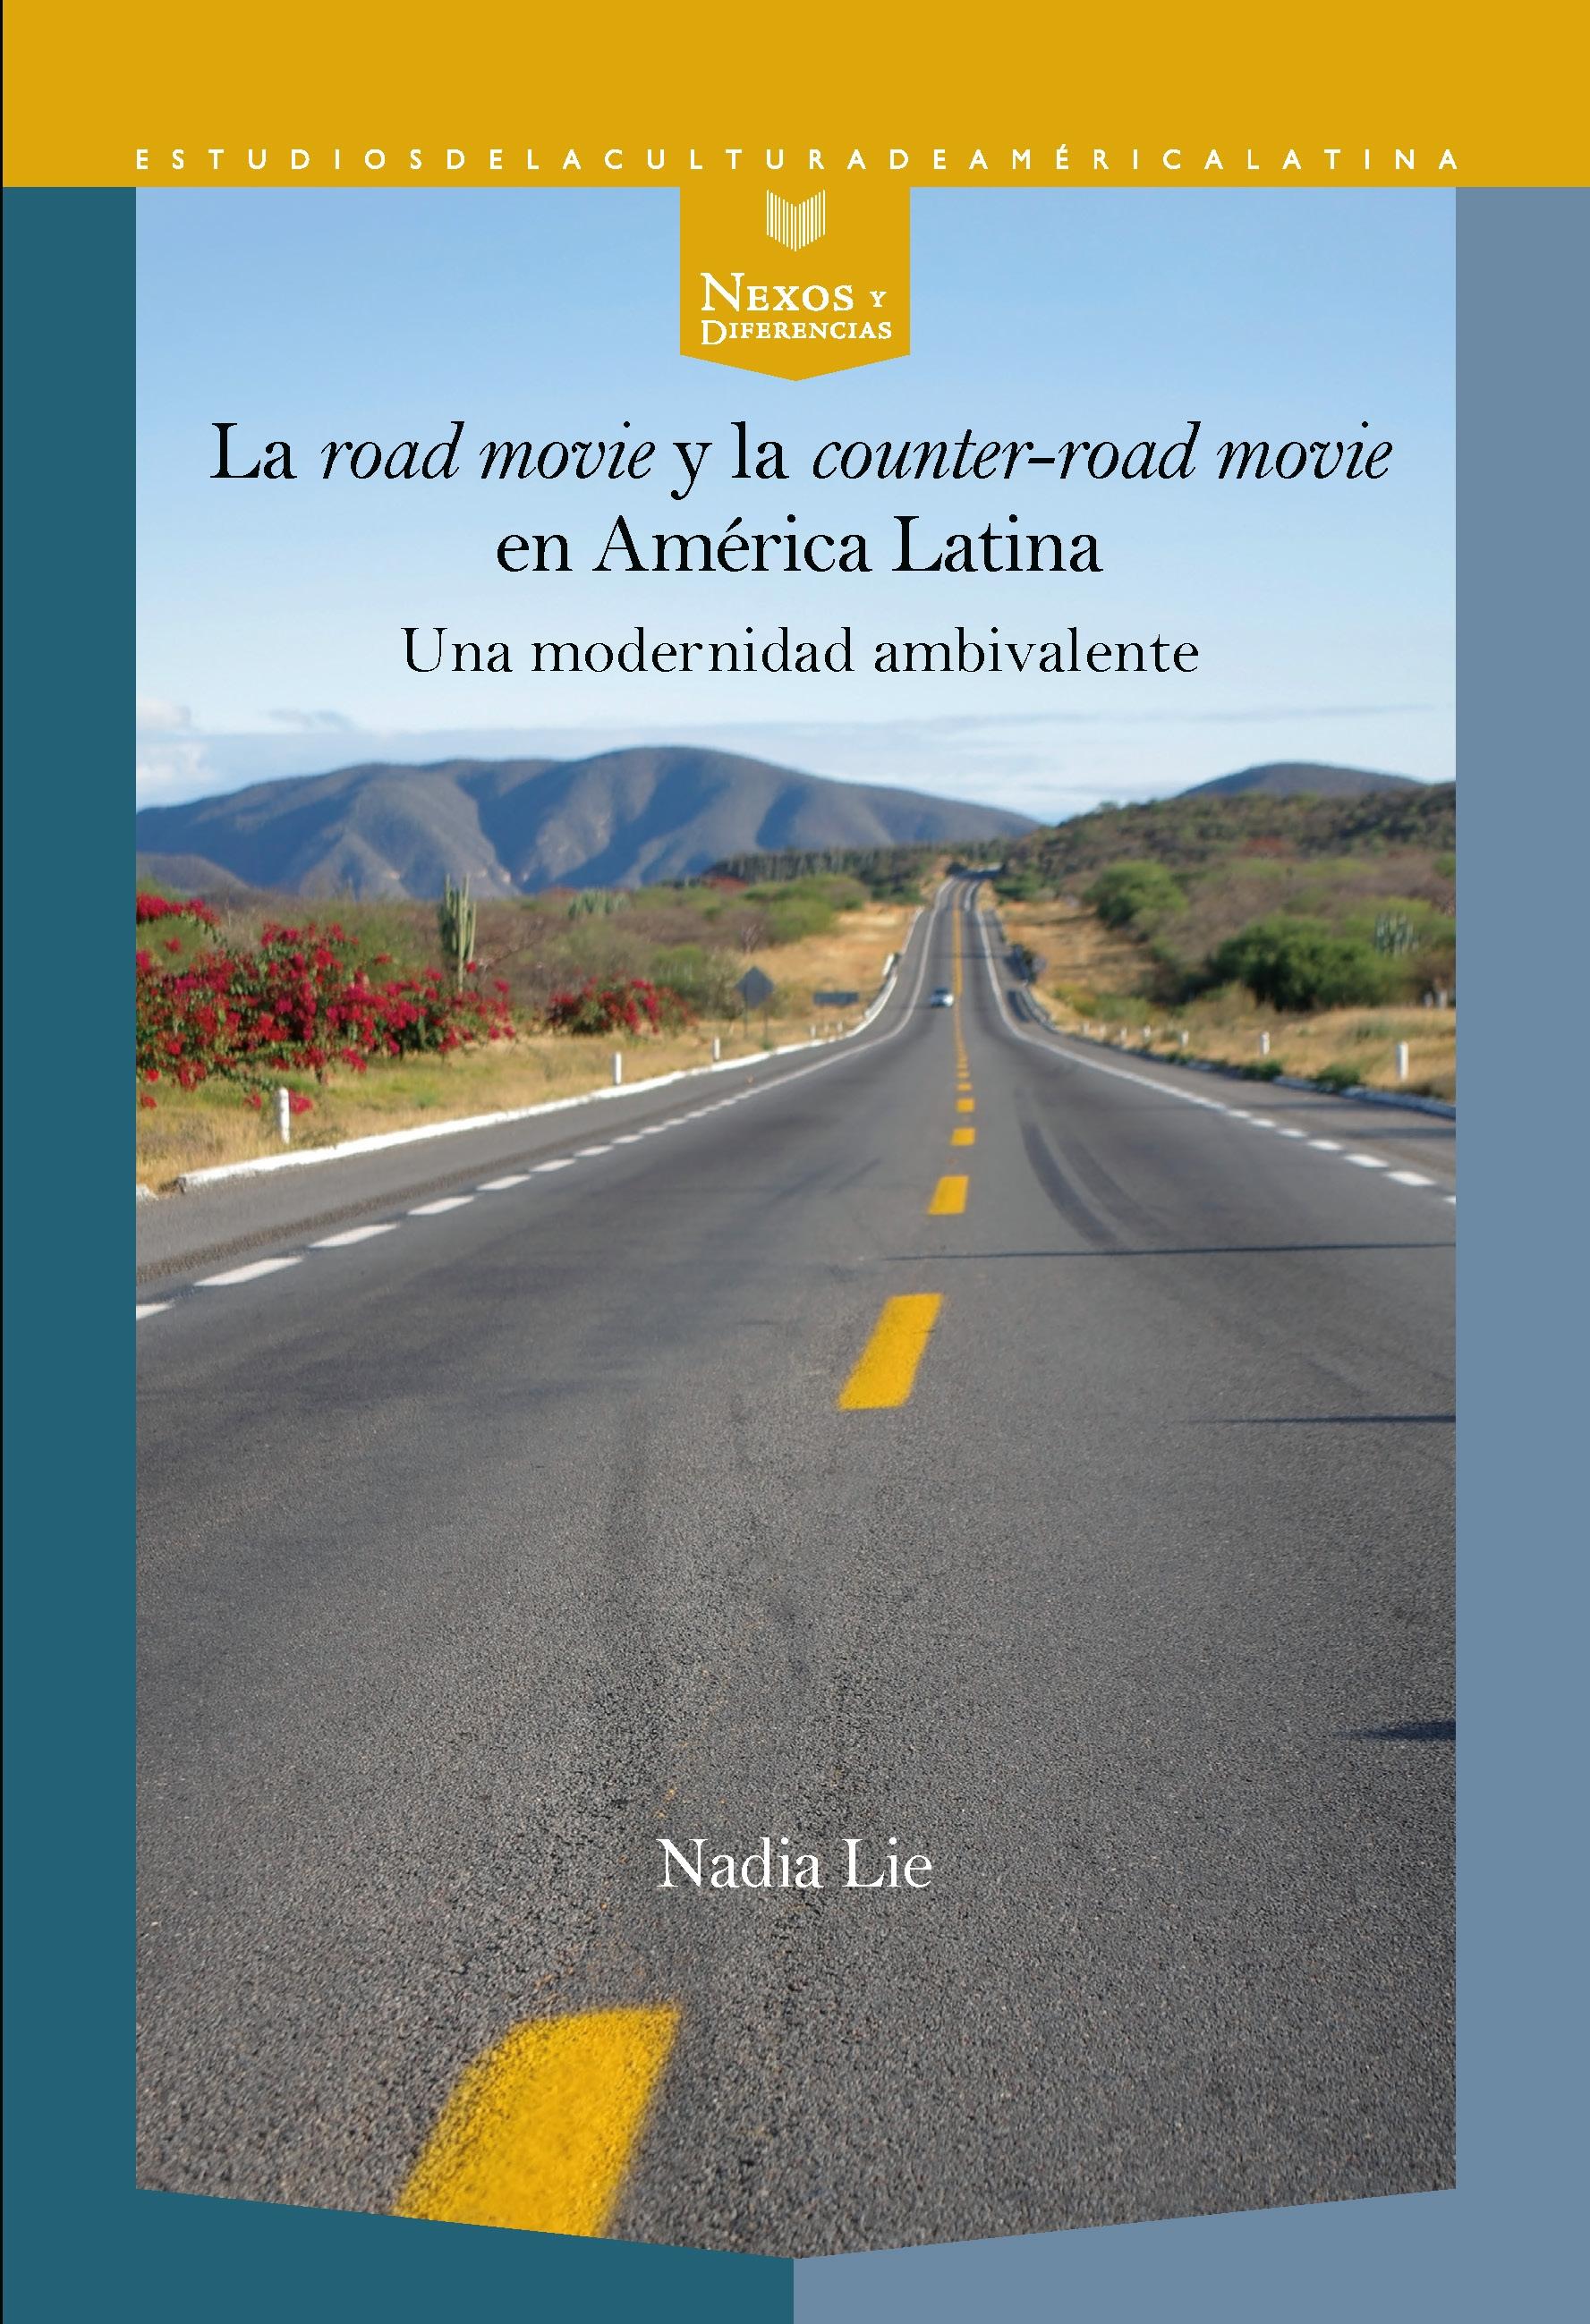 LA "ROAD MOVIE" Y LA "COUNTER-ROAD MOVIE" EN AMÉRICA LATINA "una modernidad ambivalente"